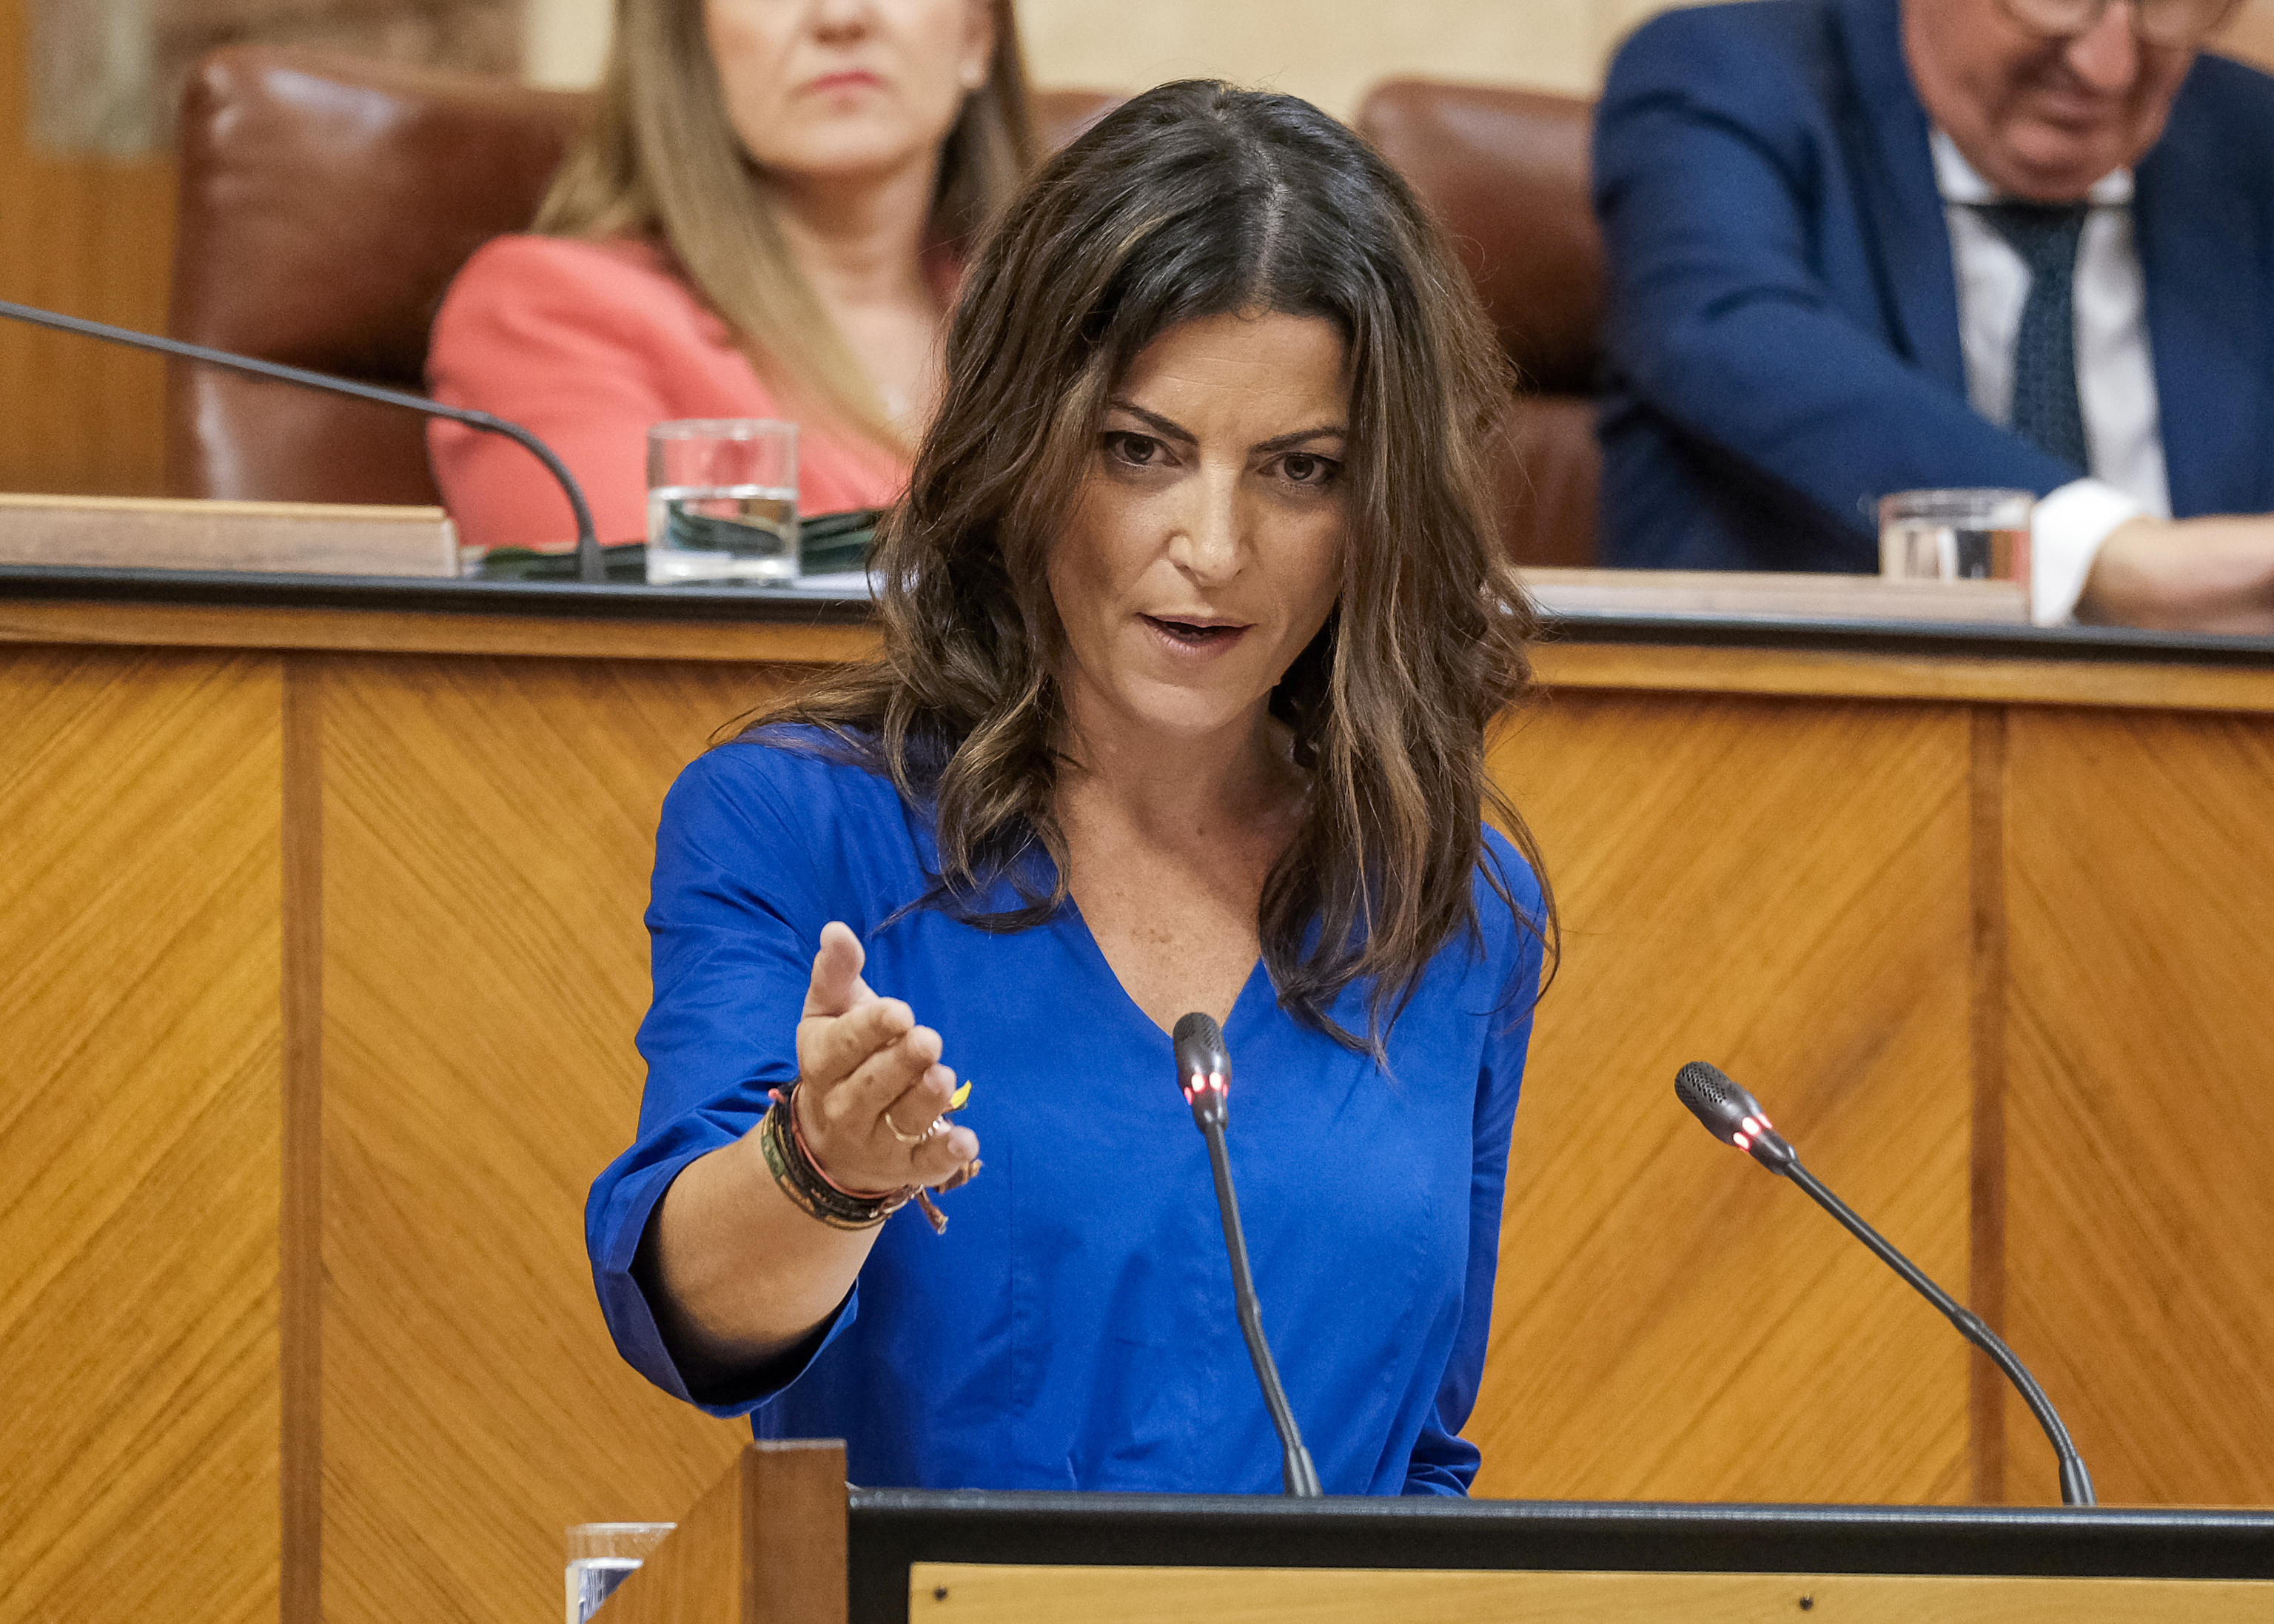  La diputada Macarena Olona replica al candidato a la Presidencia de la Junta durante el debate de investidura